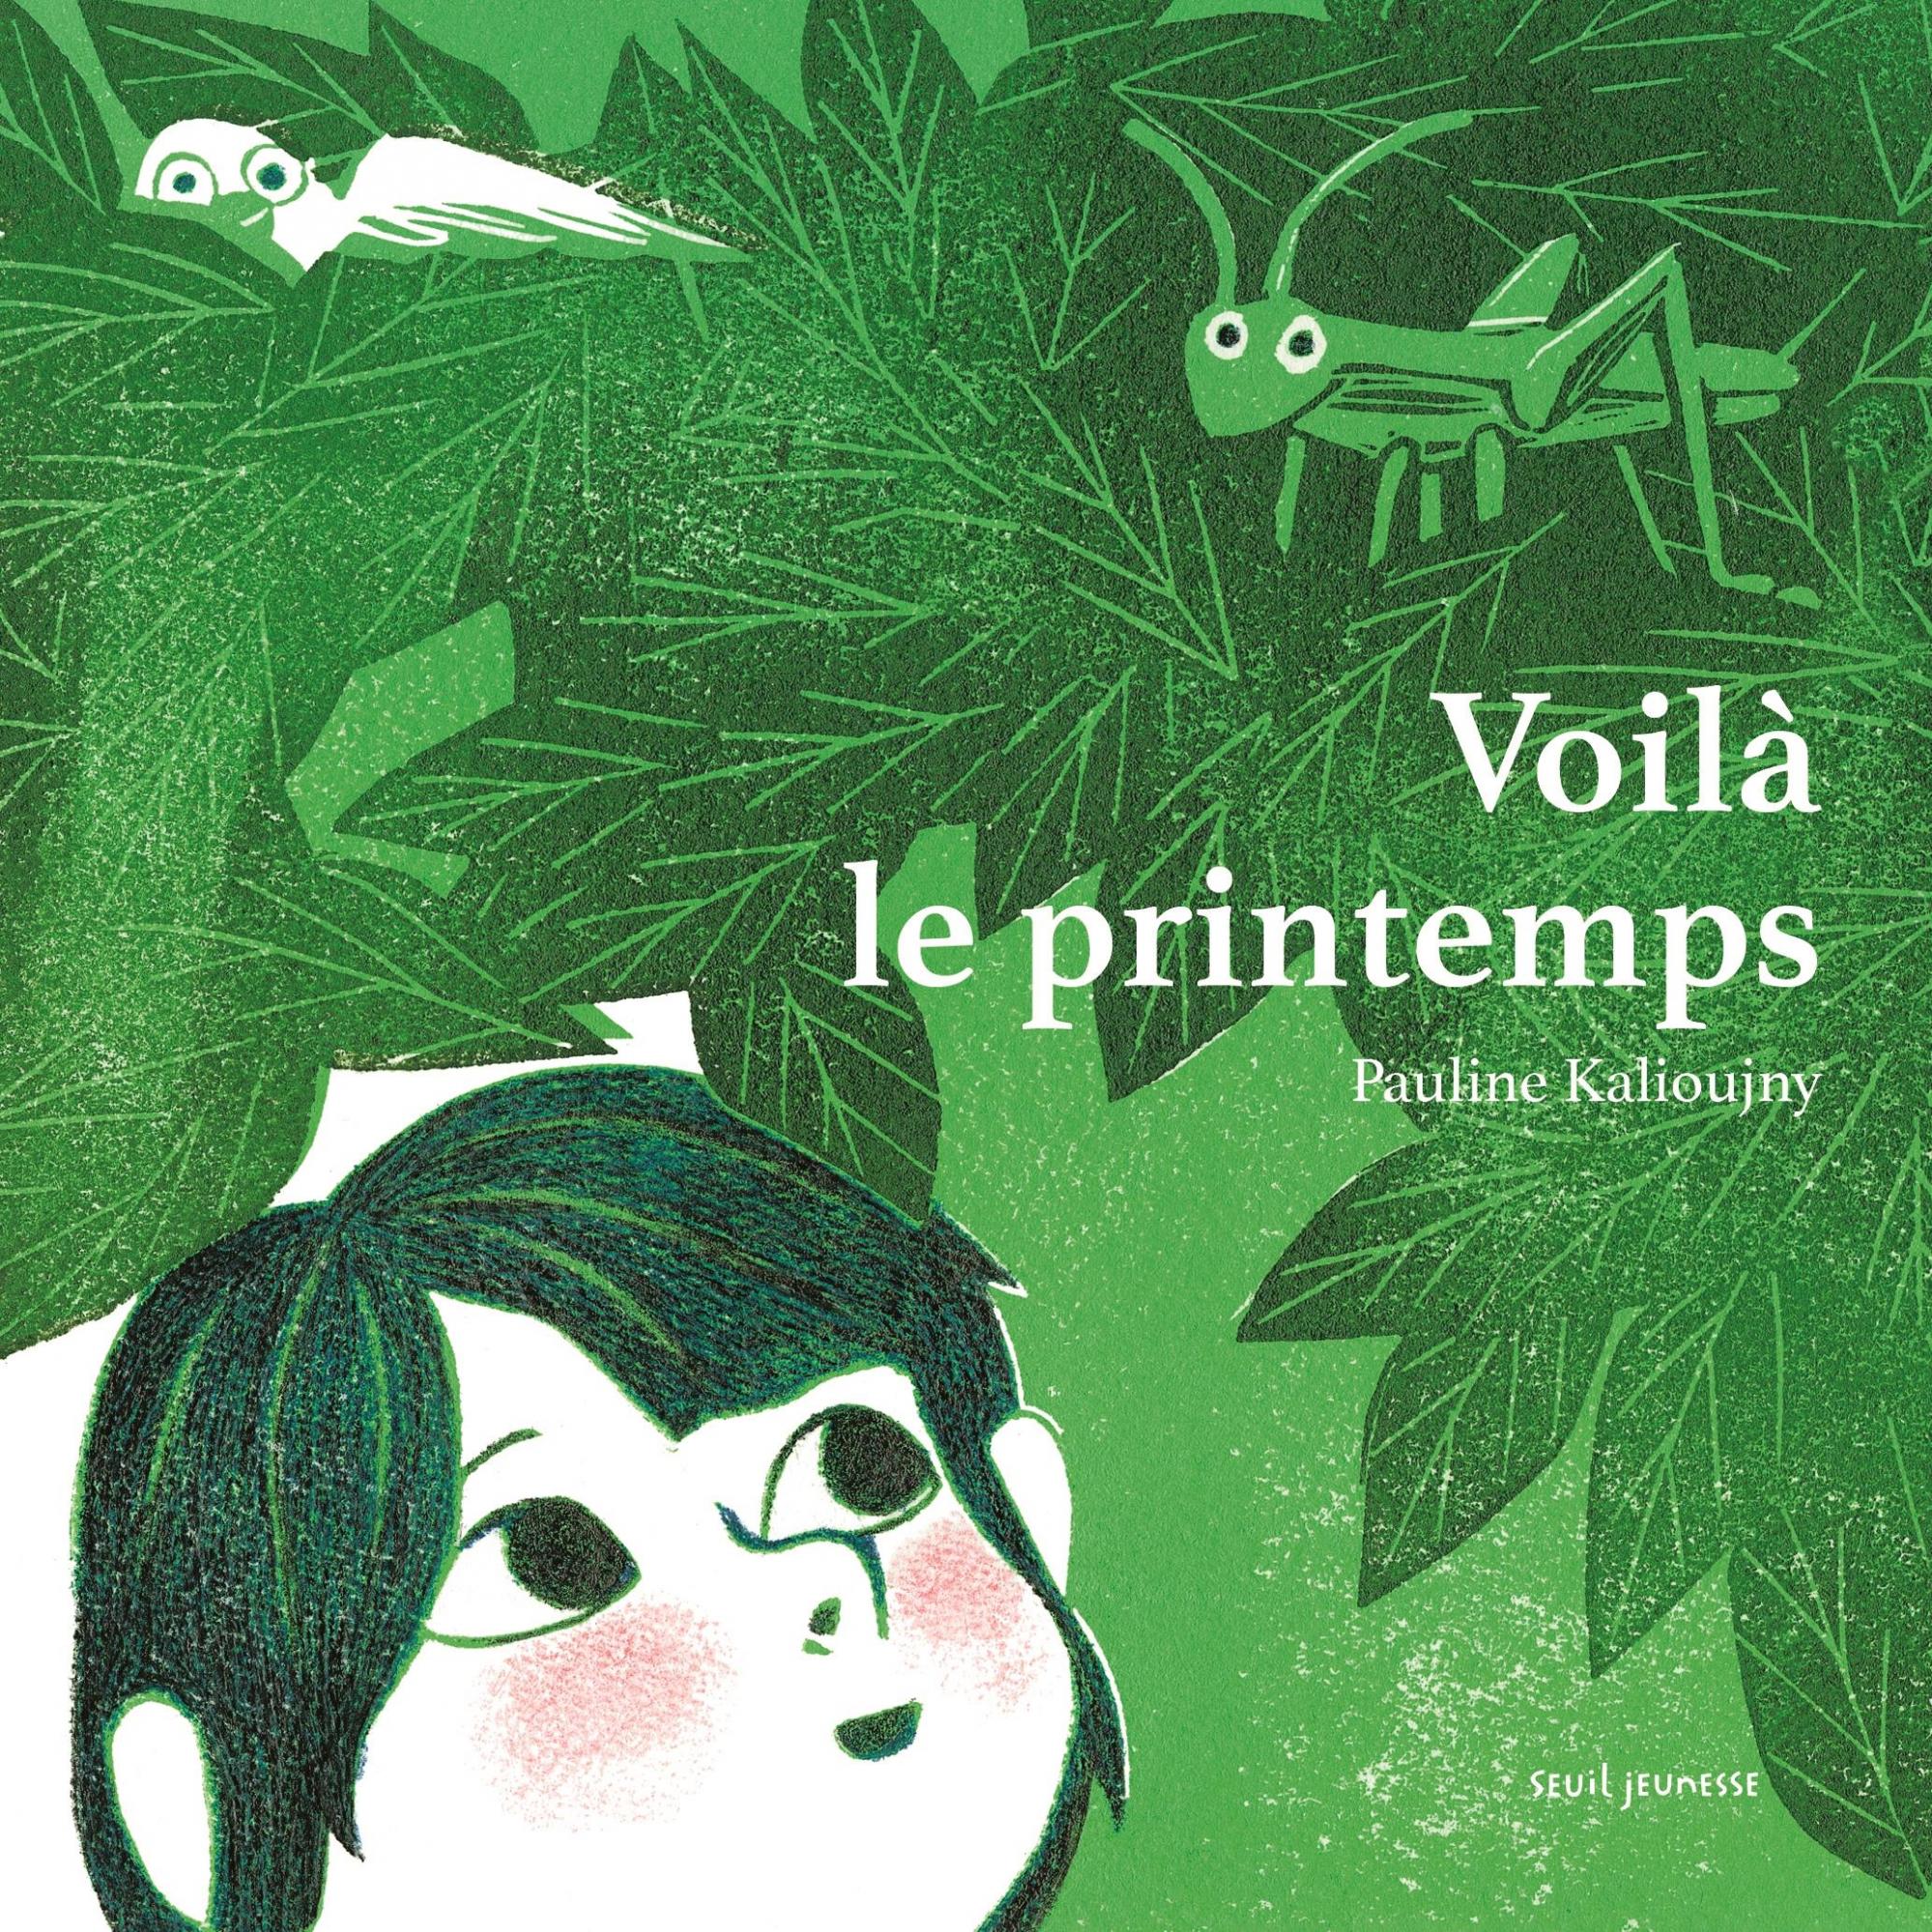 Voilà le printemps, Pauline Kalioujny, livre jeunesse